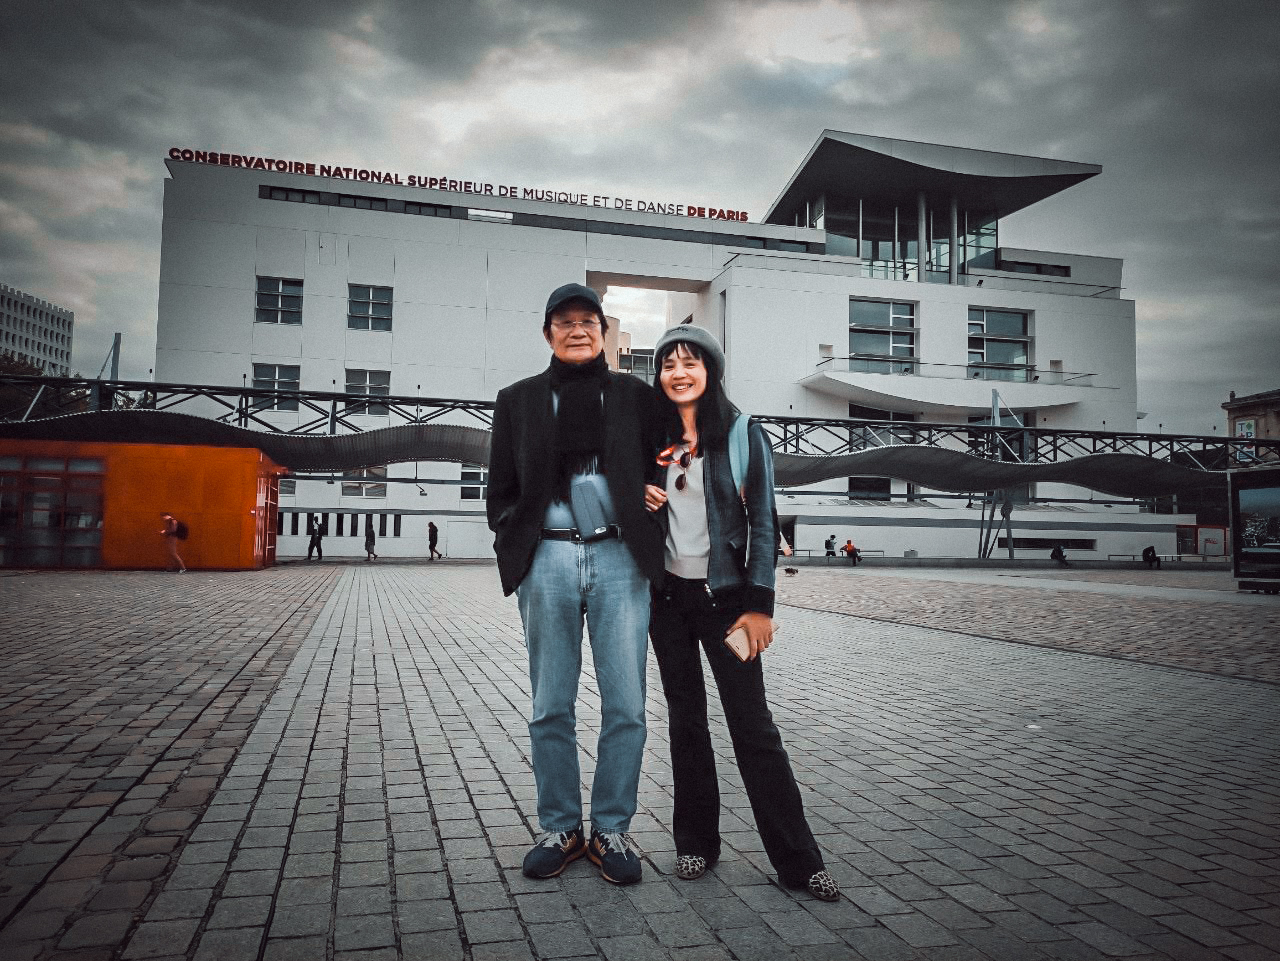 Nhạc sĩ Dương Thụ và vợ, nhà báo Thủy Phạm, trong lần tới thăm nơi mà ông nói đùa là giấc mơ gãy cánh: Nhạc viện Paris (Pháp)